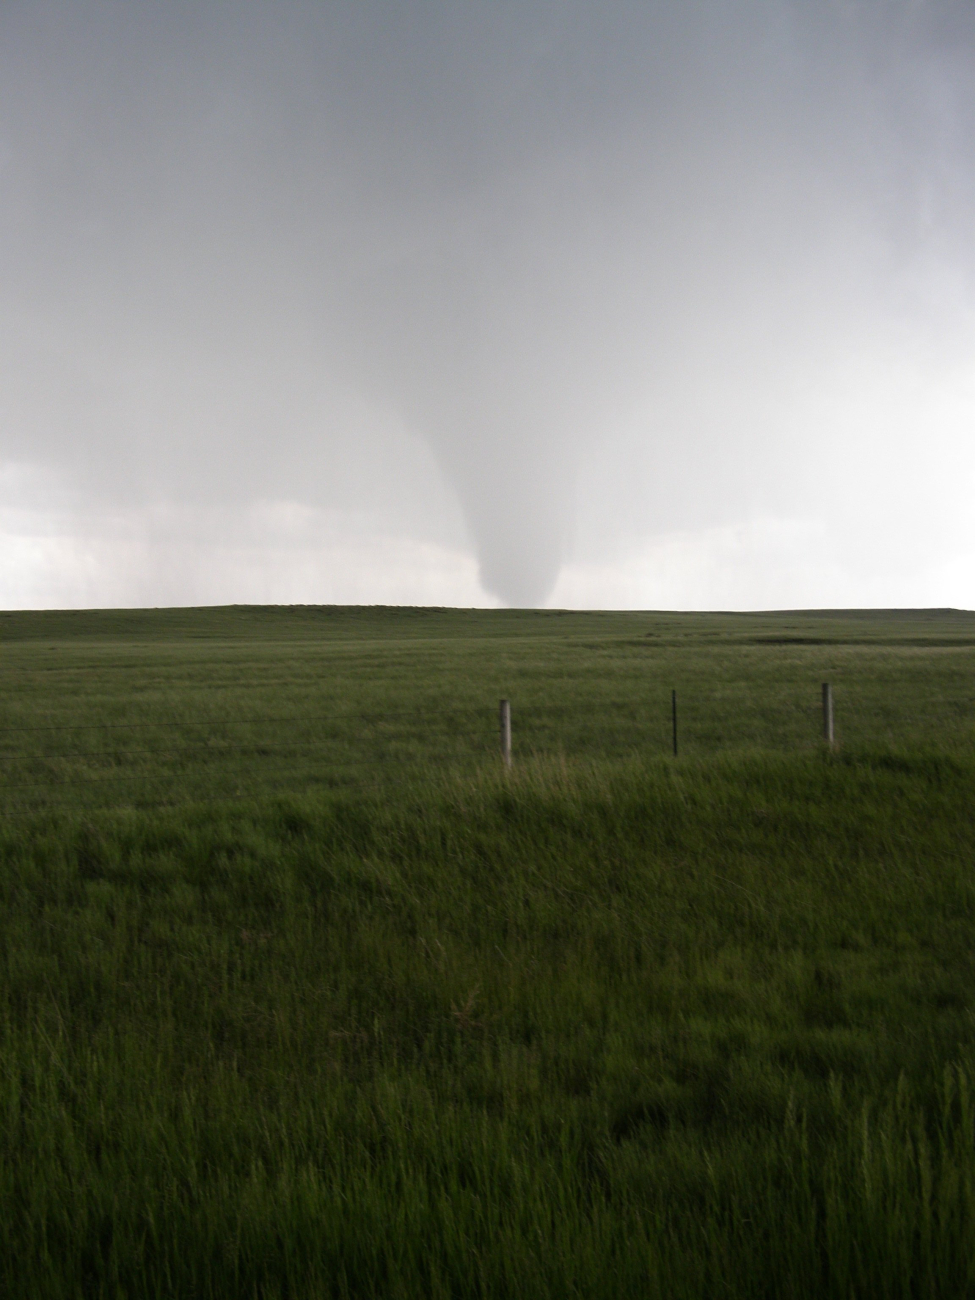 VORTEX2 intercepts a tornado in SE Wyoming on June 5, 2009